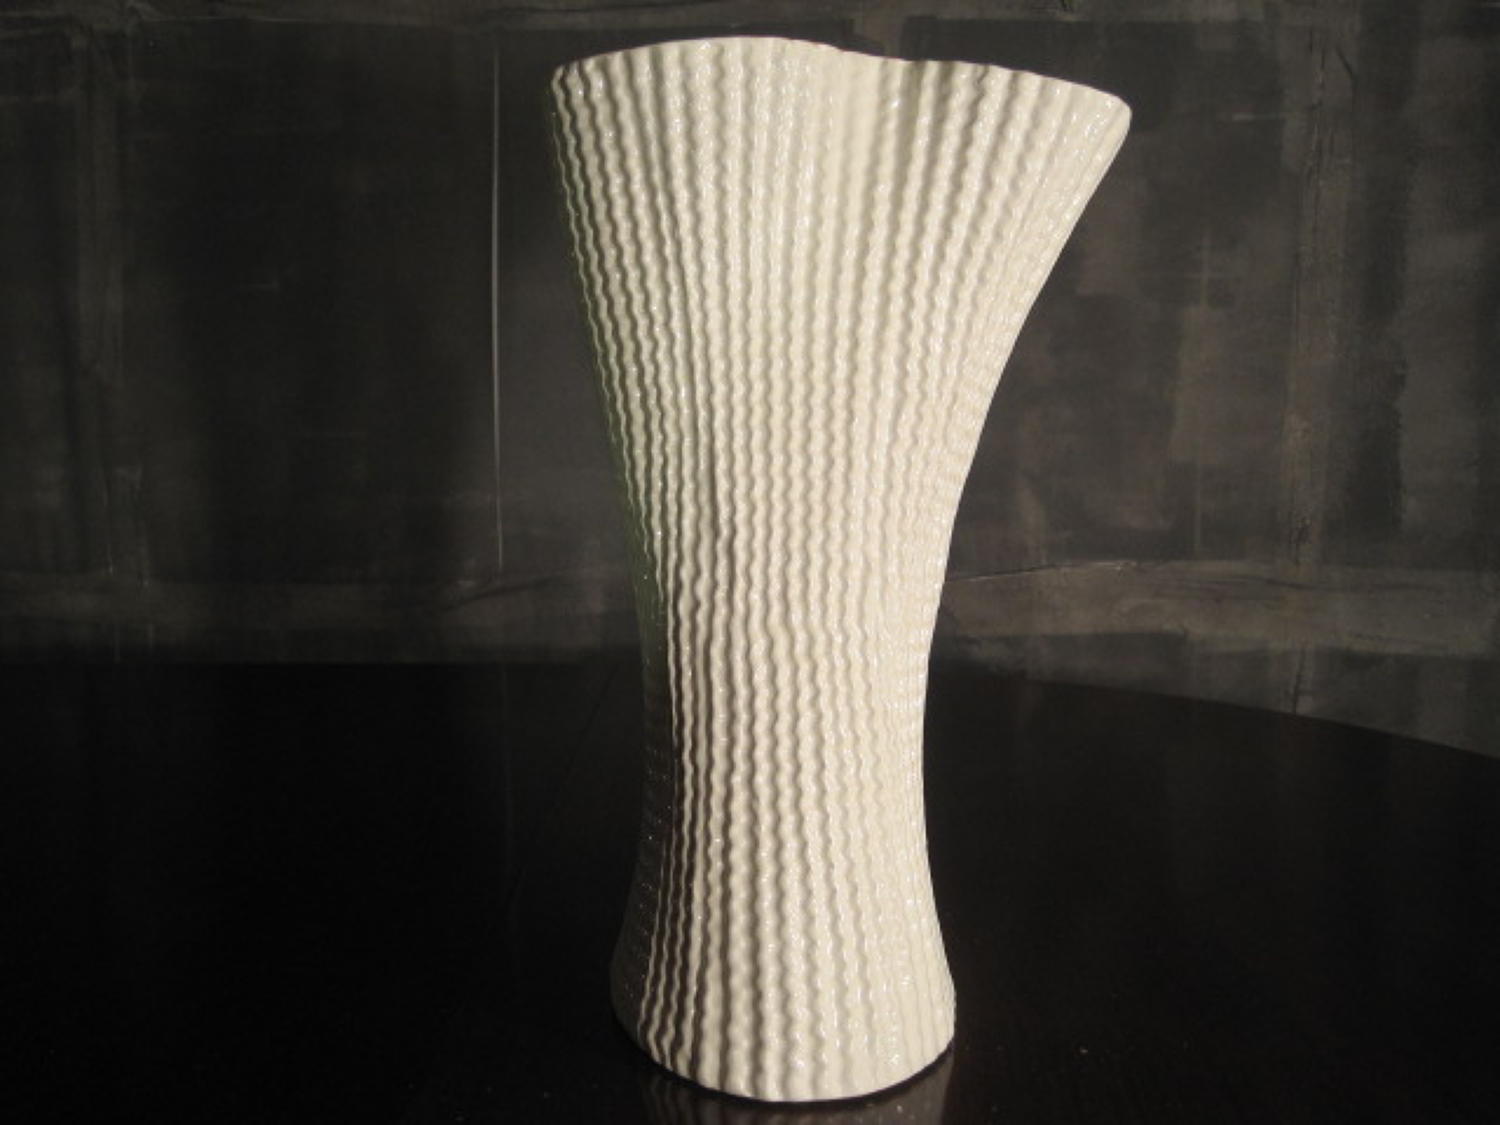 Cardboard vase by Paolo Ulian